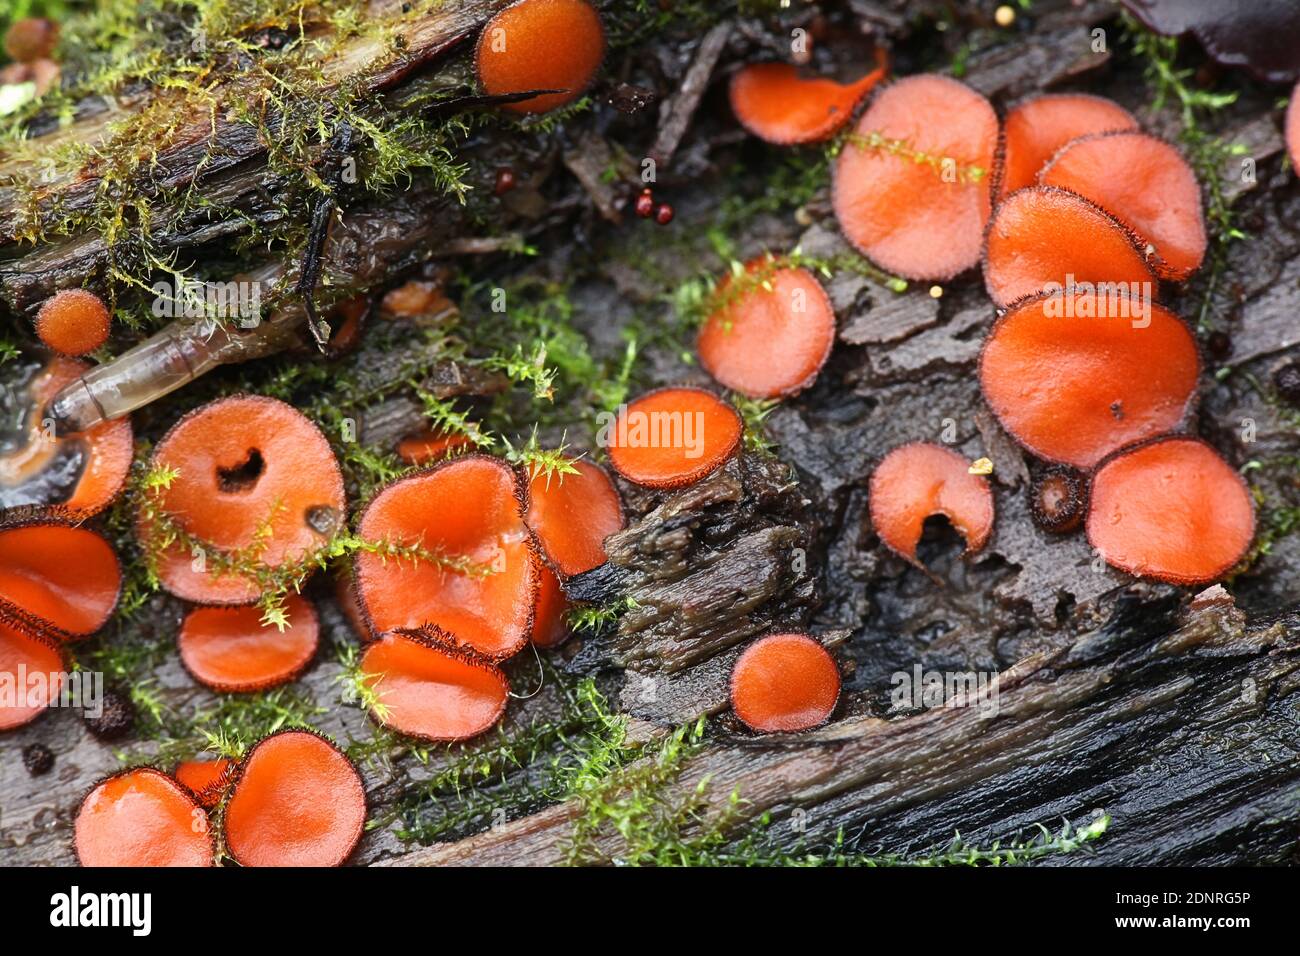 Scutellinia scutellata, bekannt als die Wimpernschale, die Molly Augenzwinker, die Scharlach Elf Kappe, die Wimpernpilz oder die Wimpernpixie Tasse, wilder Mushroo Stockfoto